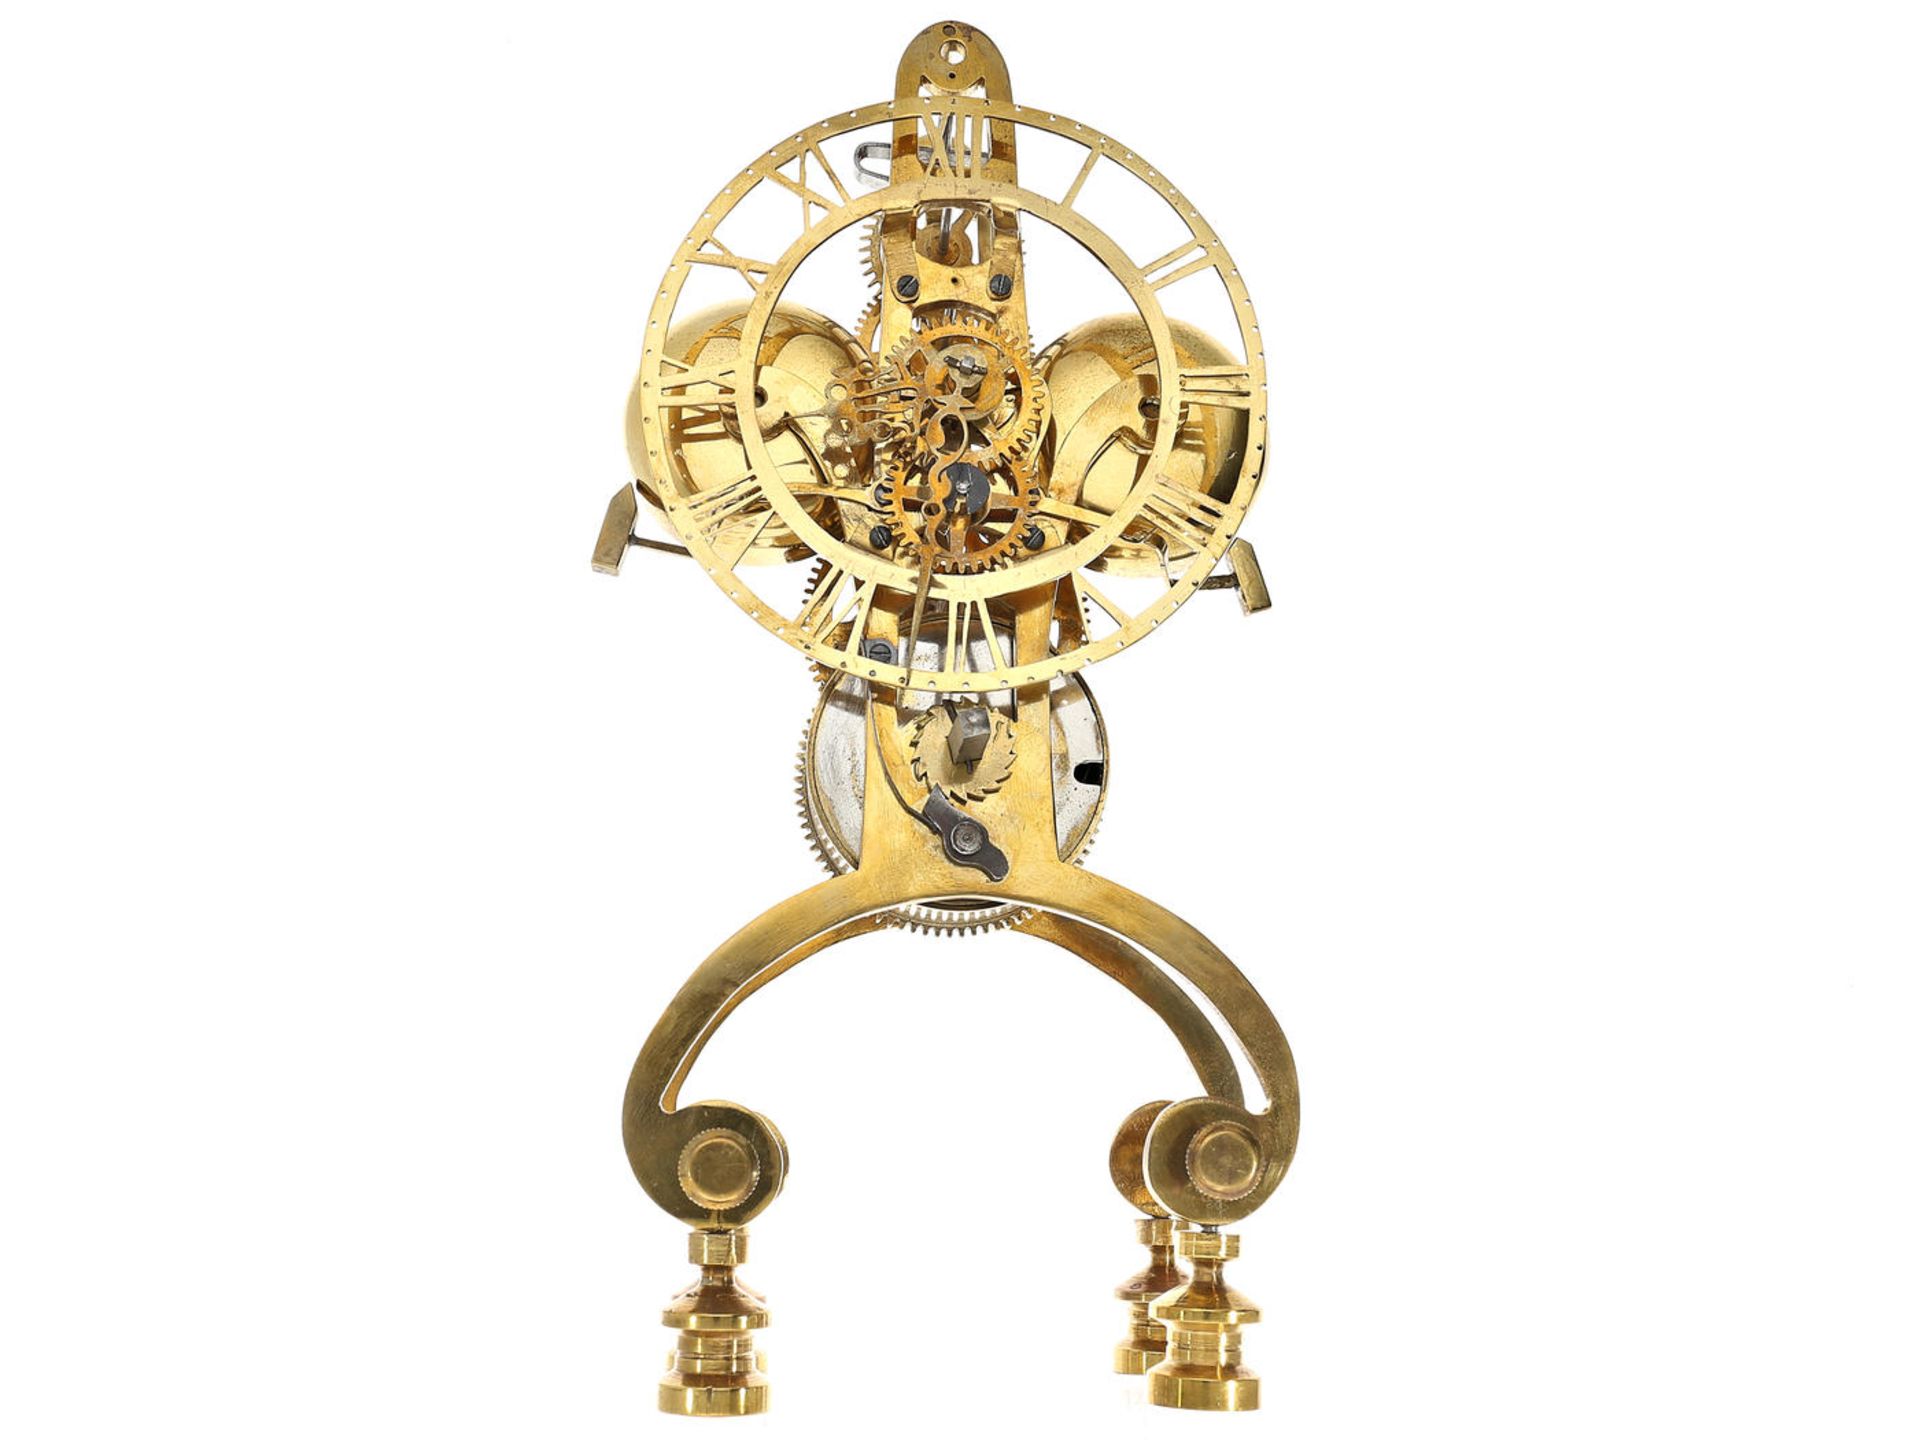 Tischuhr: dekorative skelettierte Tischuhr mit Schlag auf 2 Glocken, Einzelstück, Uhrmacherarbeit um